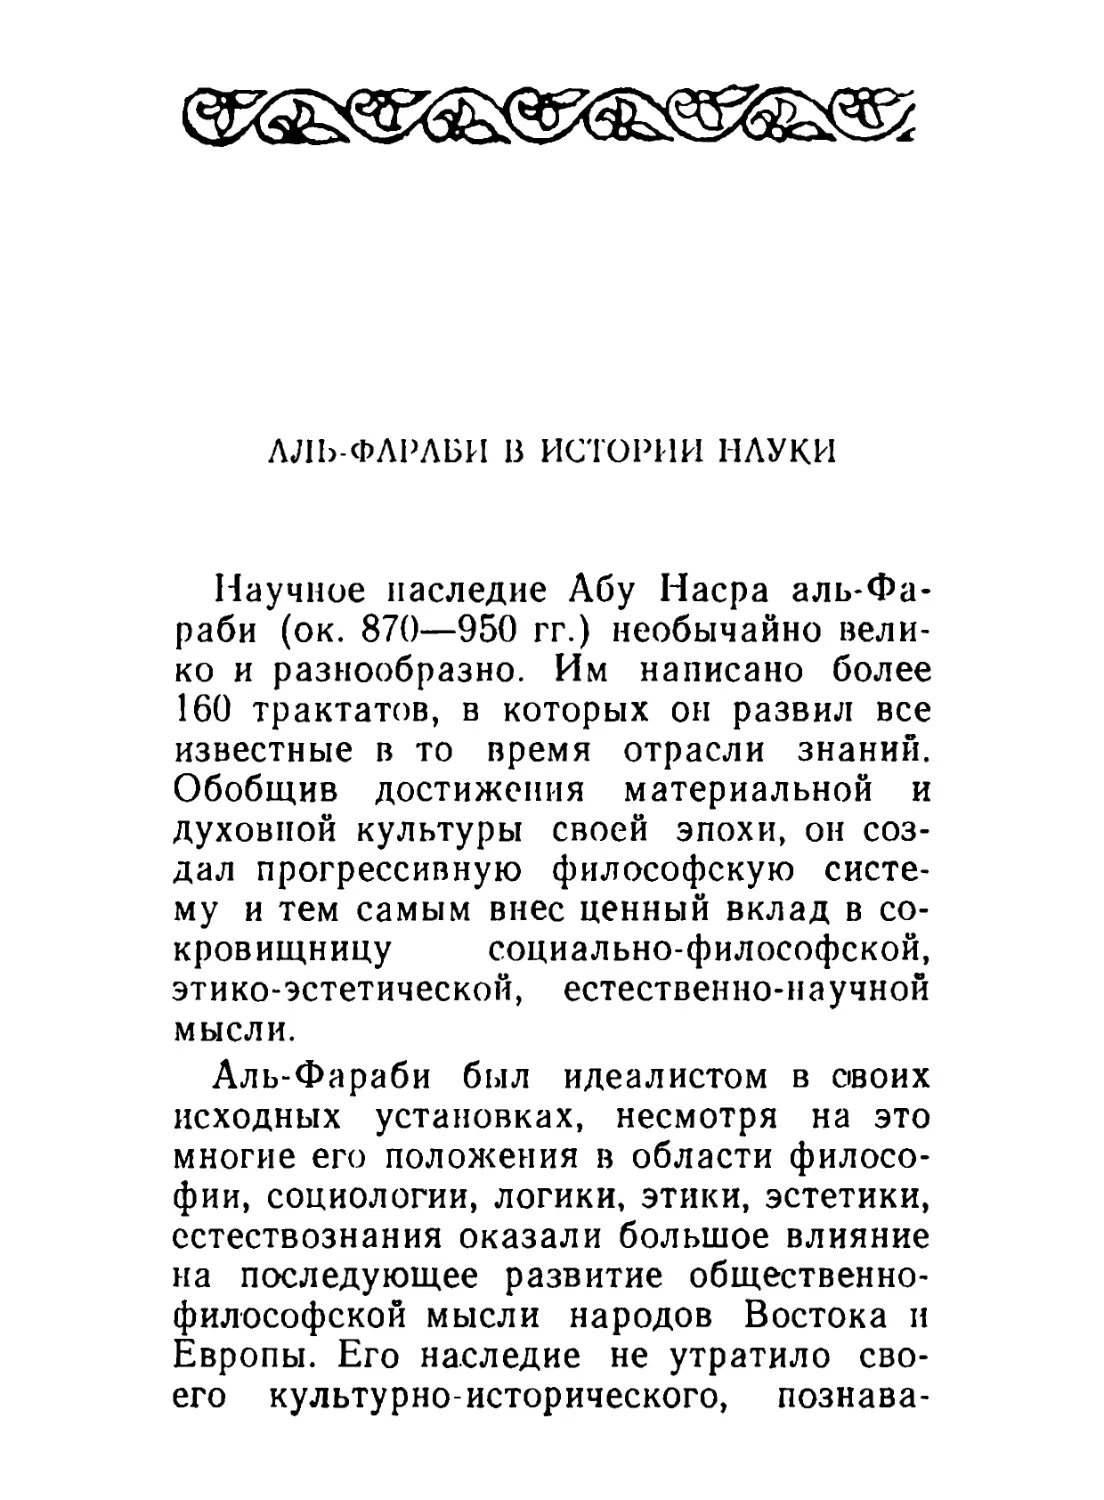 Бурабаев М. С. Аль-Фараби в истории науки